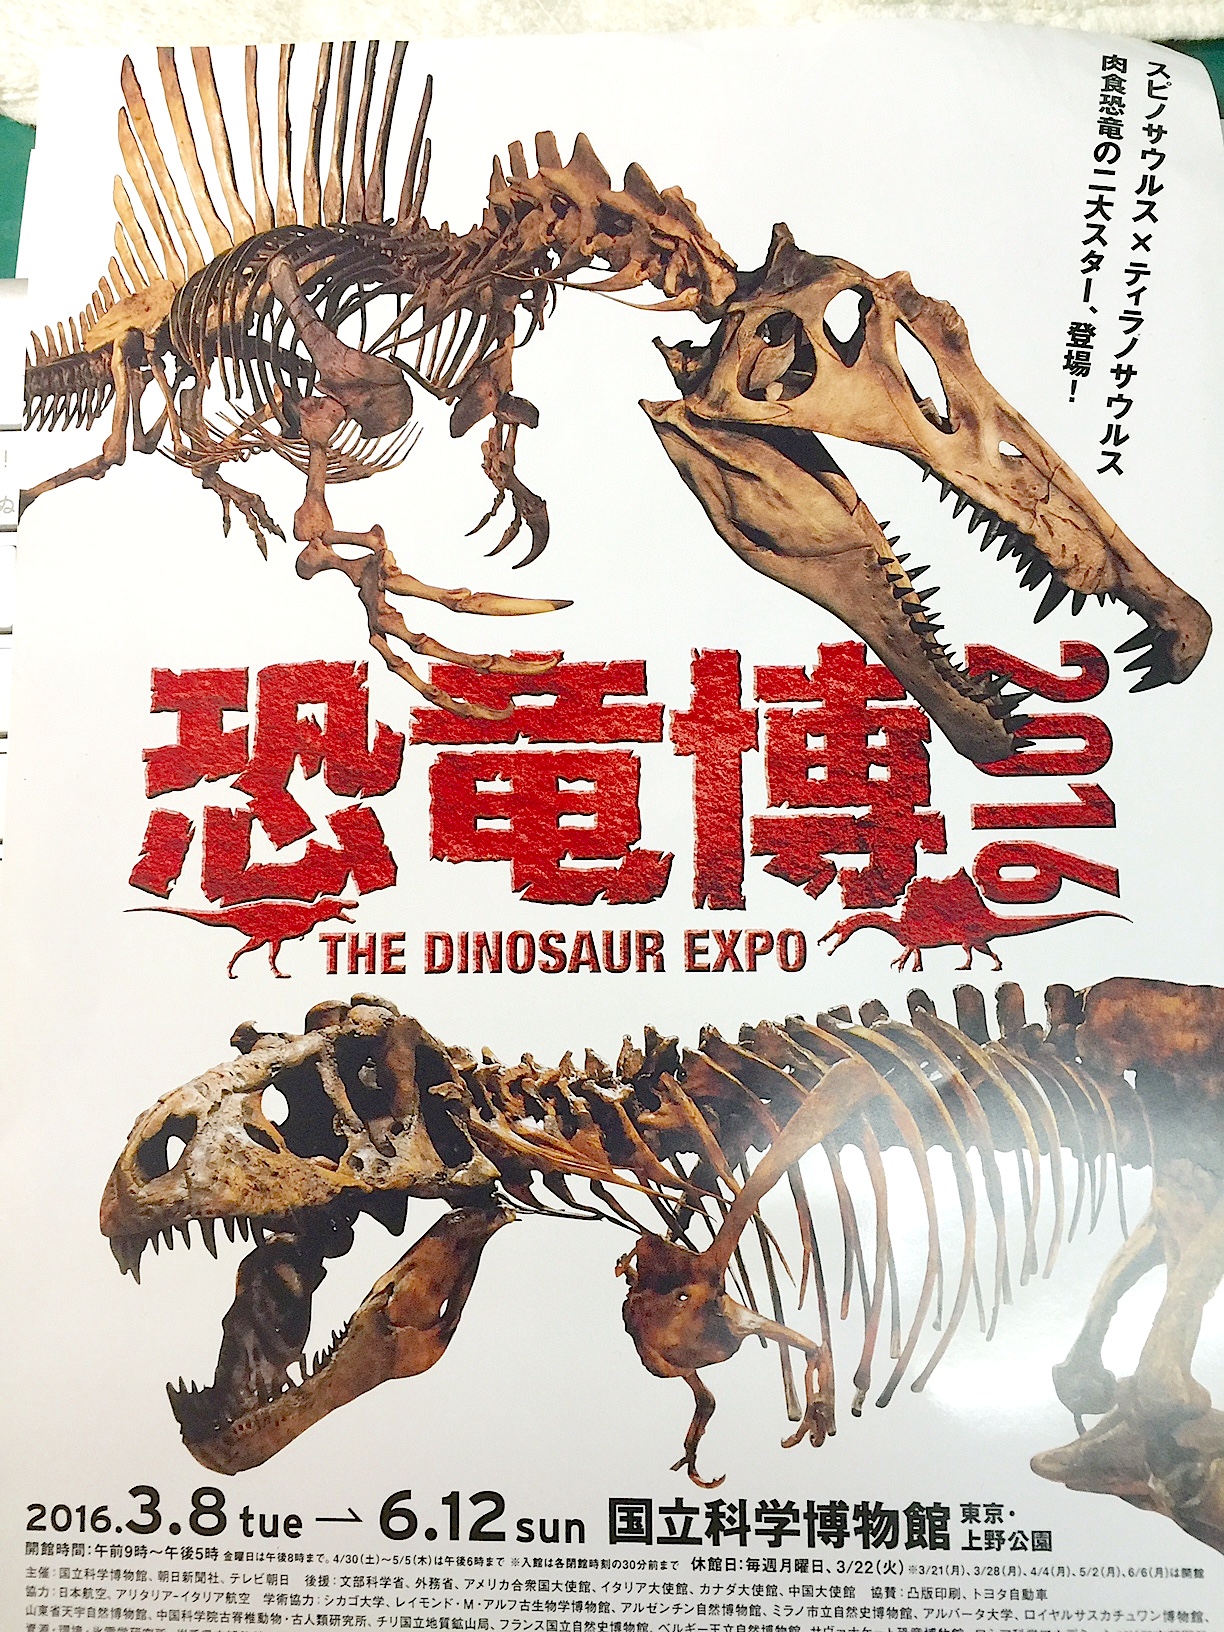 ● 恐竜化石 スピノサウルスの歯 国立科学博物館　恐竜博 2016 THE DINOSAUR EXPO ちらし　新聞　フィギュア　資料